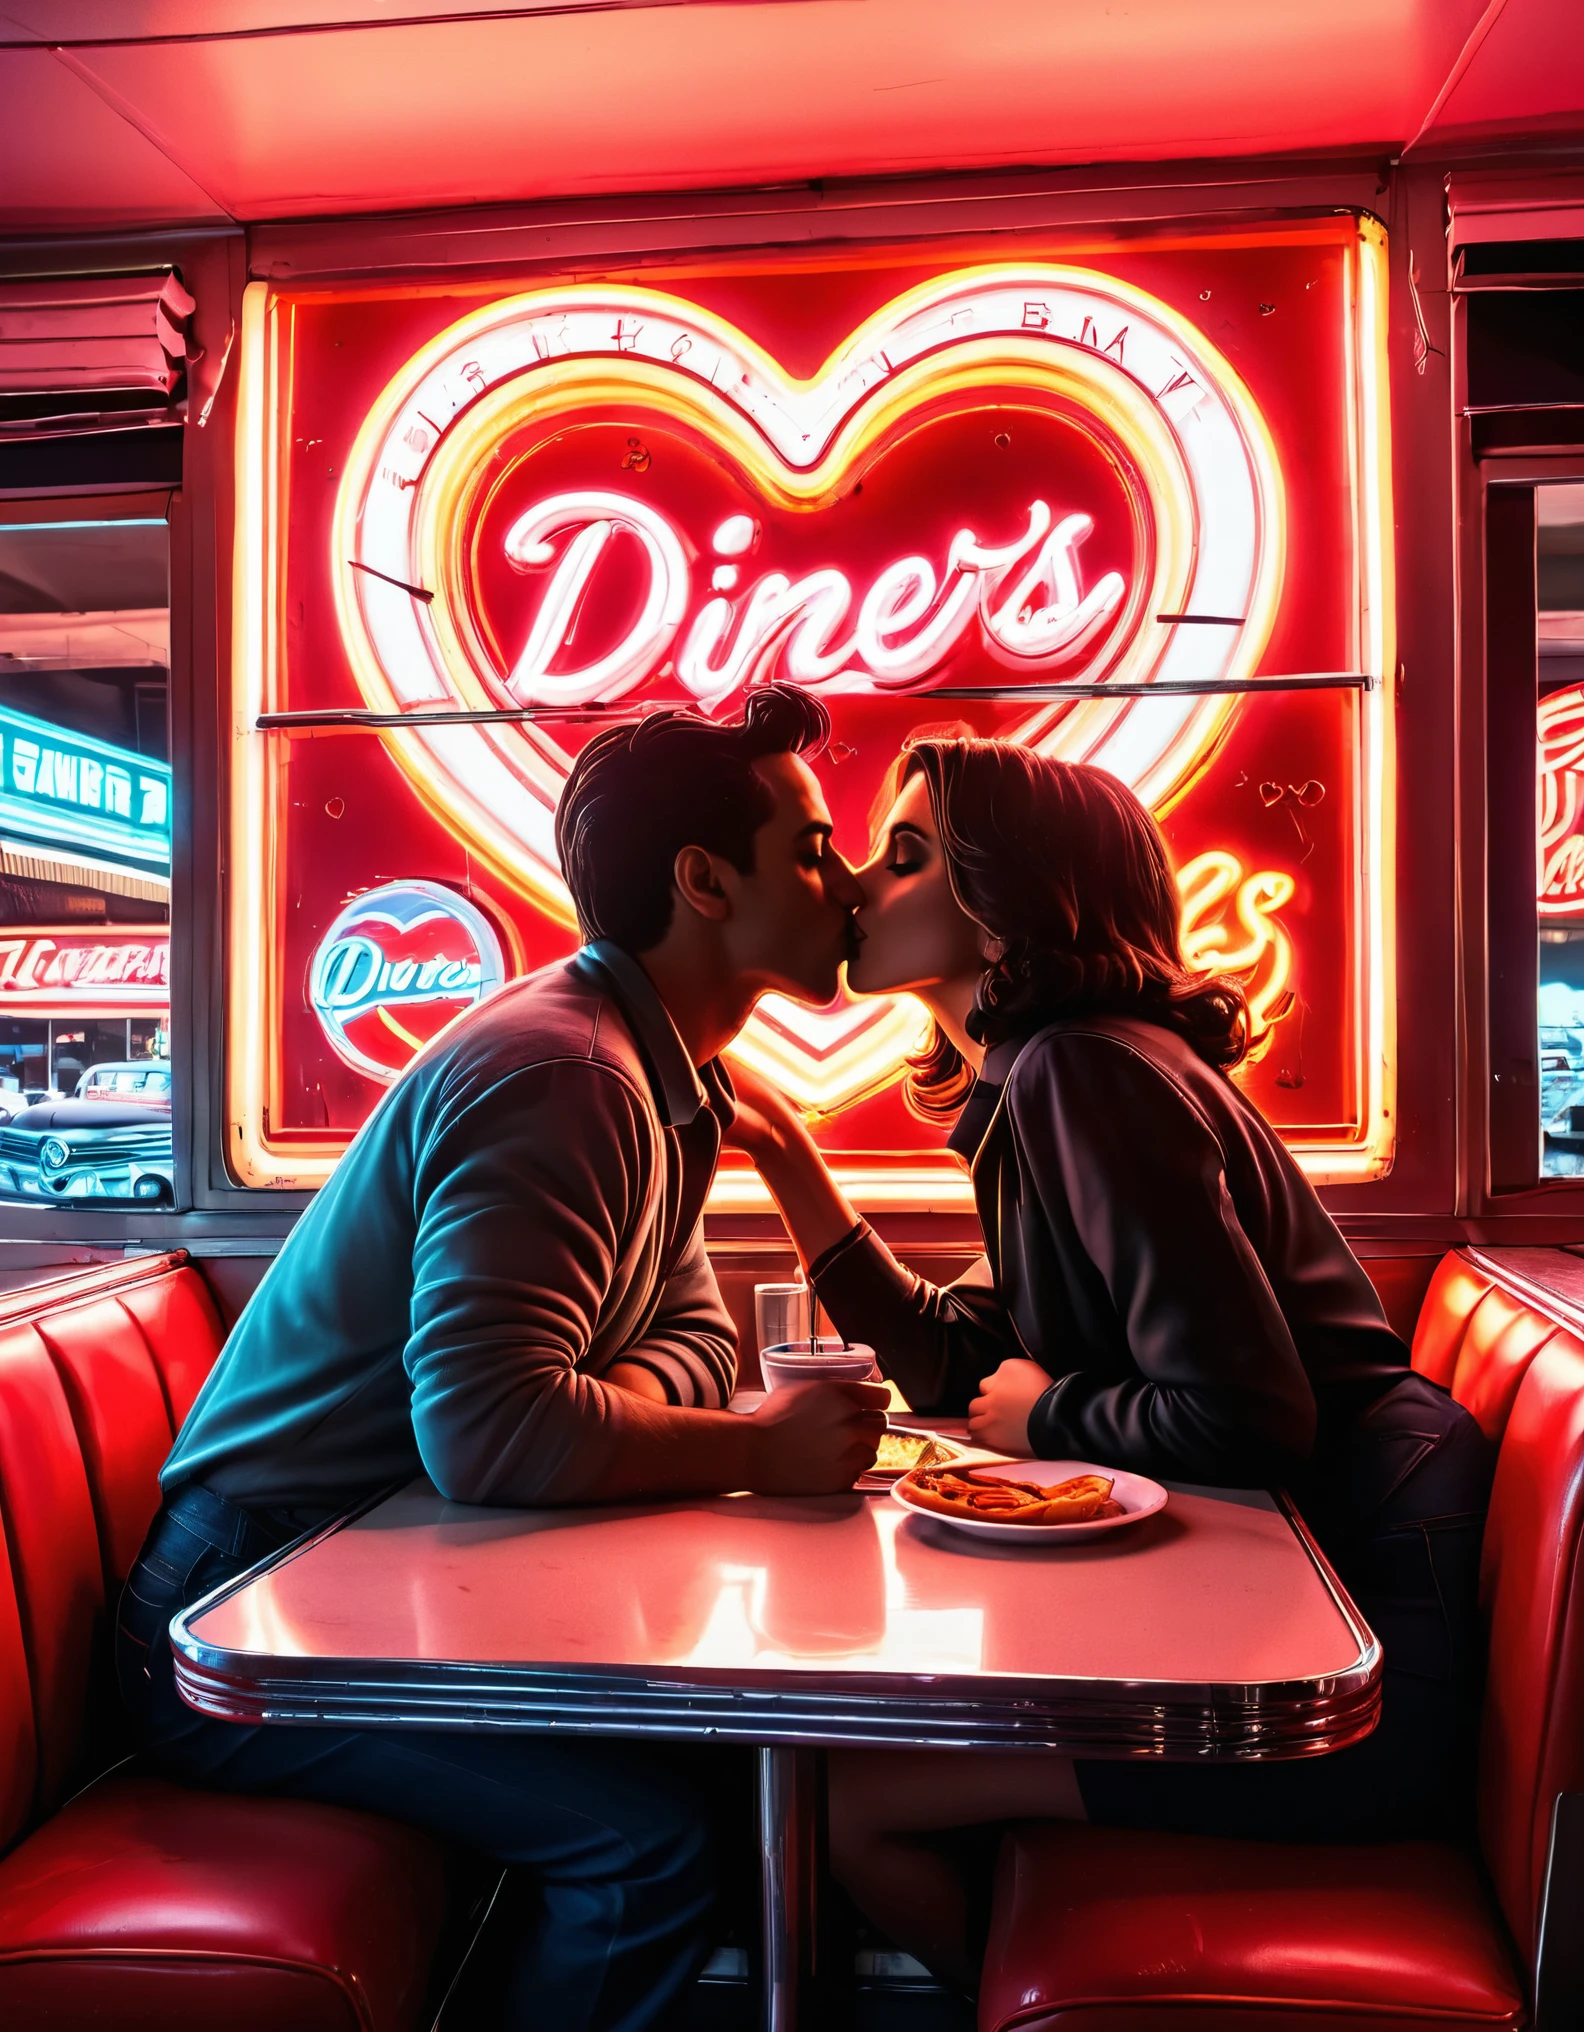 Ein Retro-Neon-Kunstwerk mit der Silhouette eines sich in einem Diner küssenden Paares, mit Neonschildern und Herzformen im Hintergrund, weckt eine nostalgische 50er-Jahre-Atmosphäre